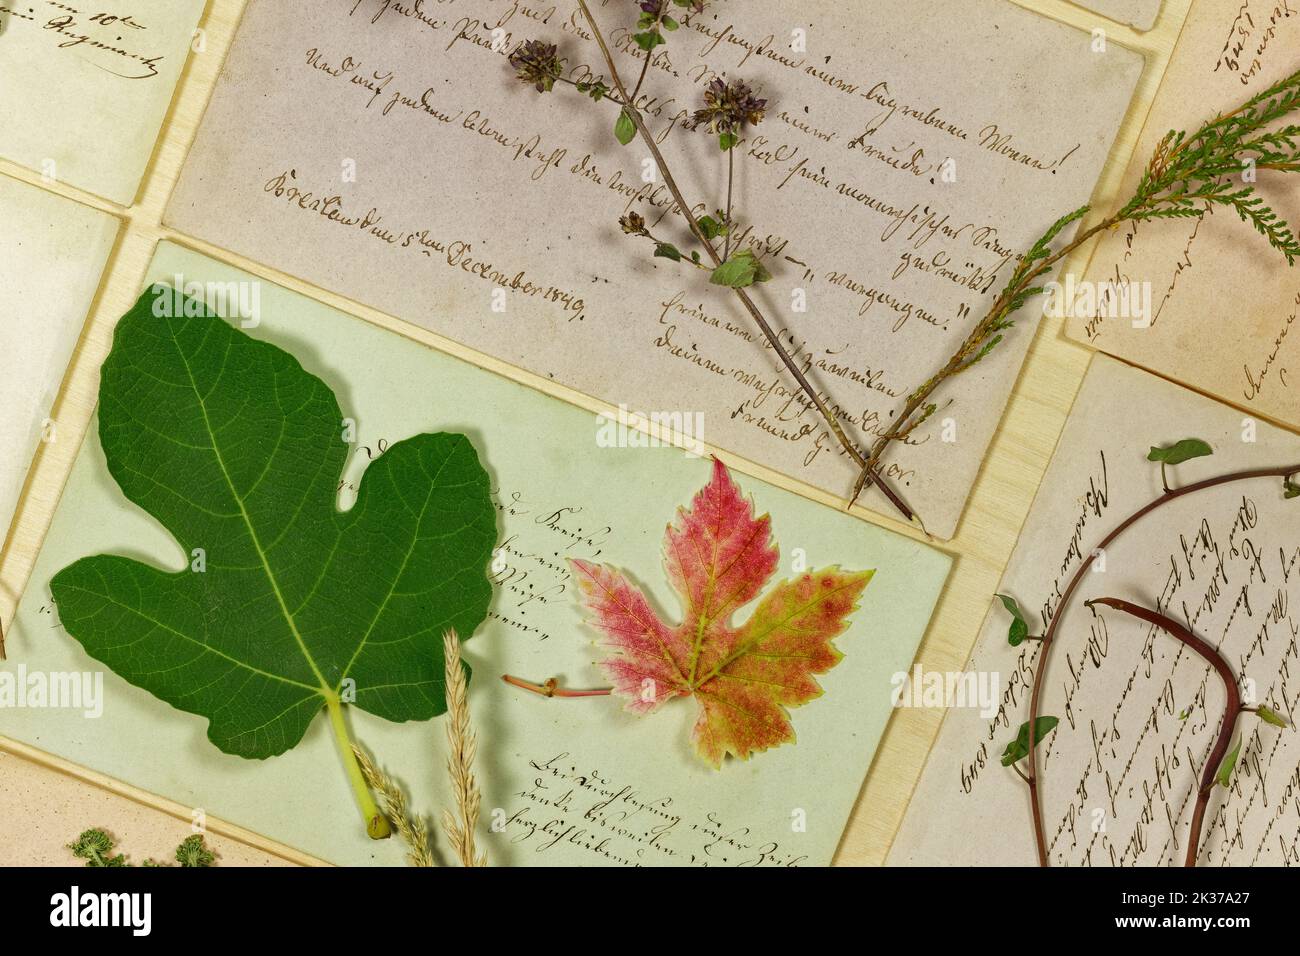 Natura morta vegetale con foglie ed Erbe di fronte alle lettere del 19th° secolo Foto Stock